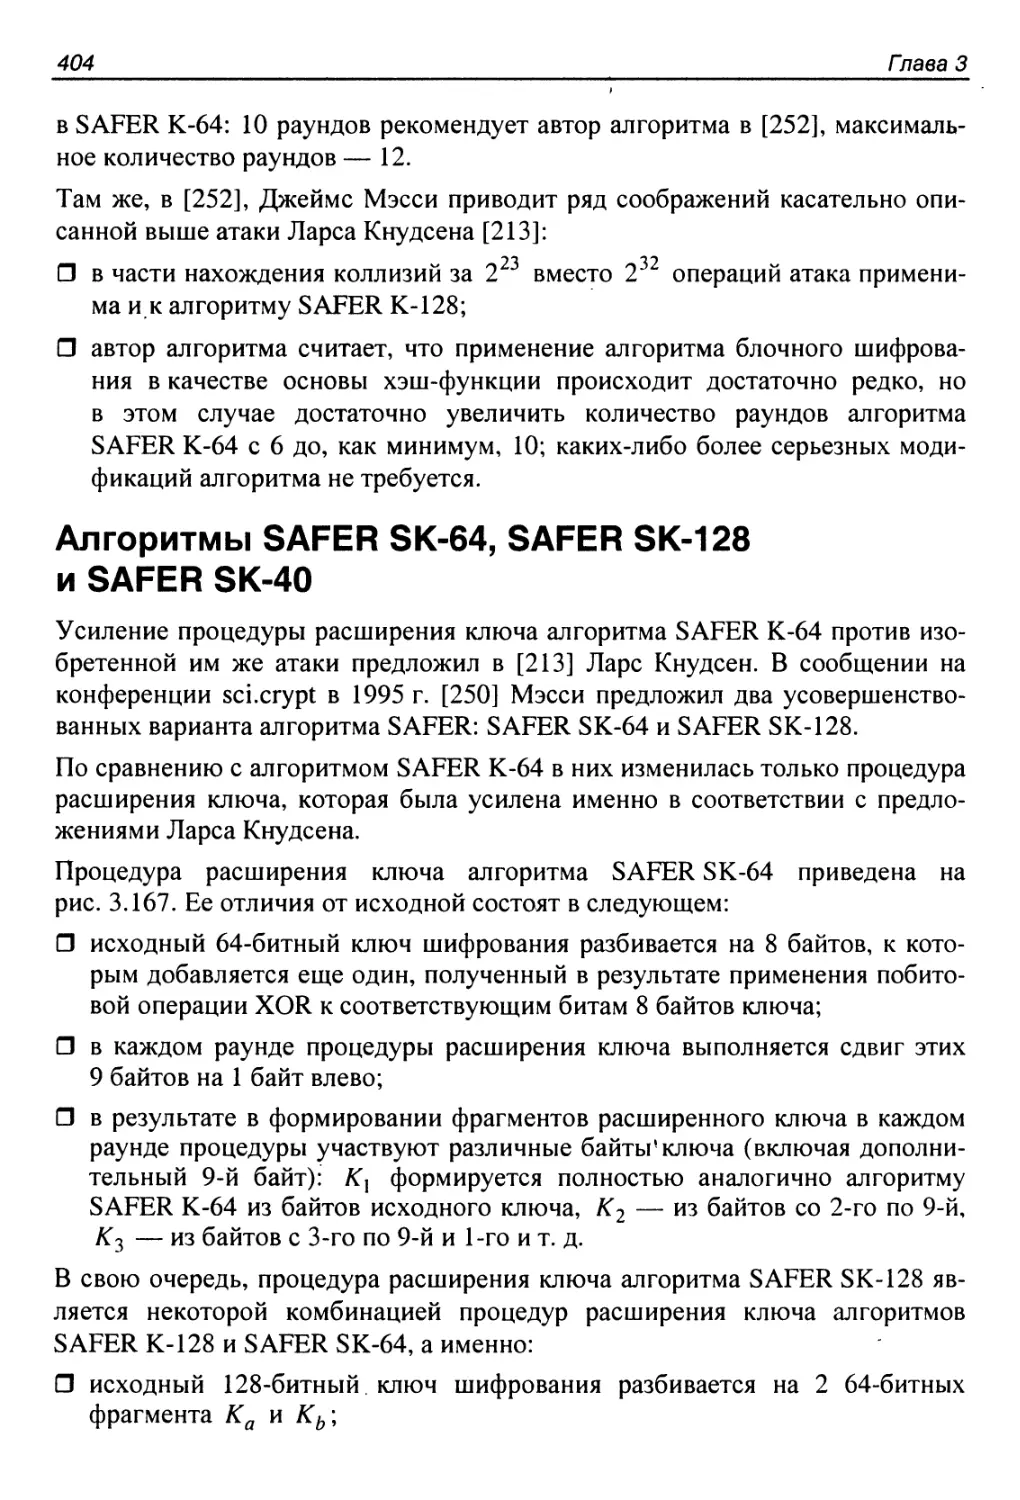 Алгоритмы SAFER SK-64, SAFER SK-128 и SAFER SK-40